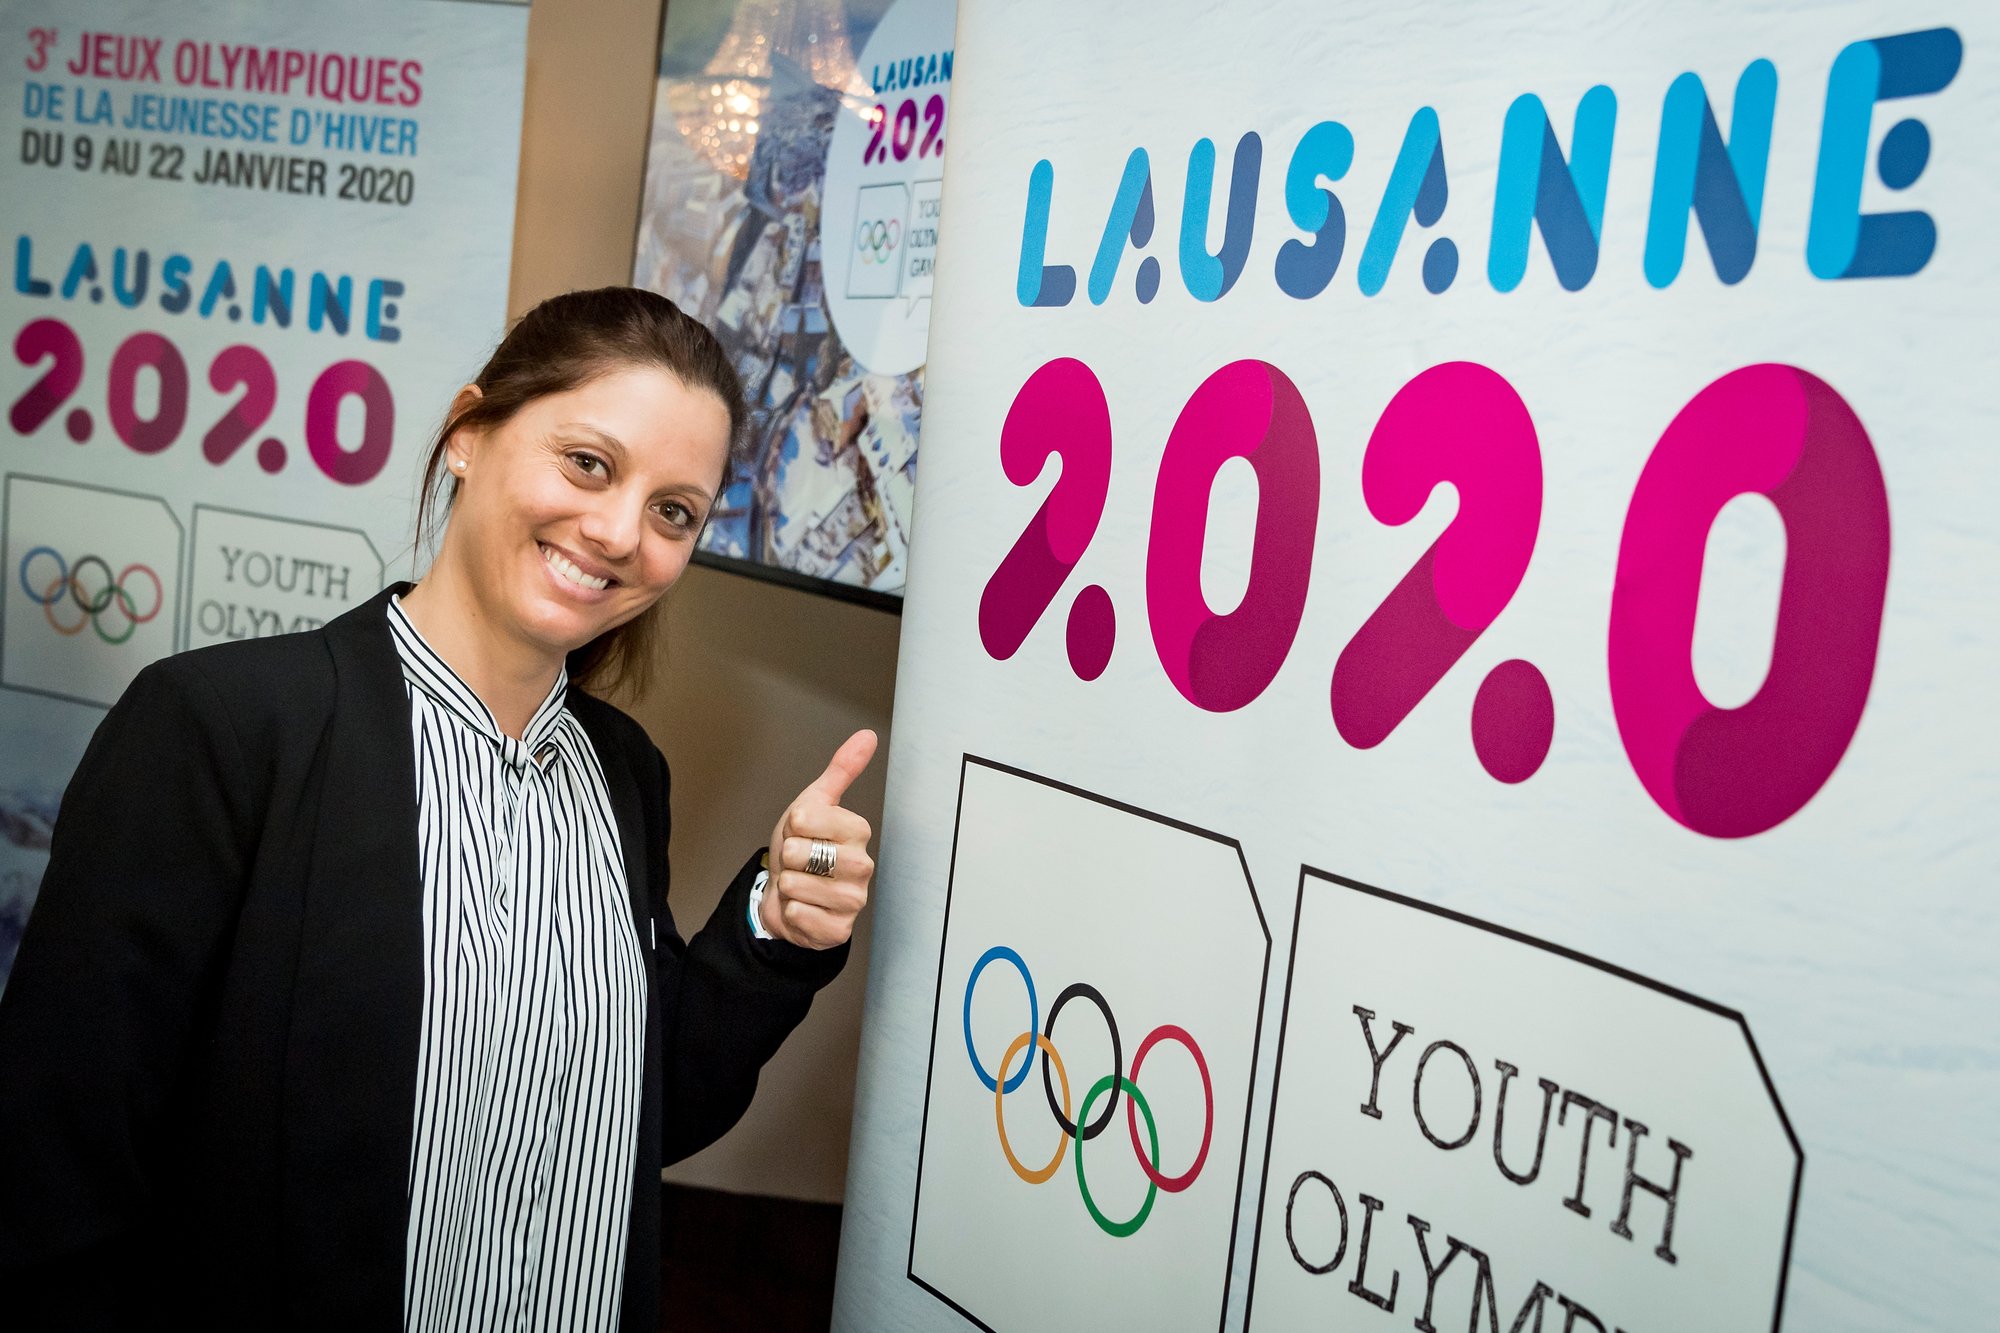 Virginie Faivre ouvrira jeudi les Jeux olympiques de la jeunesse, qui accueilleront quelque 1800 athlètes durant deux semaines.